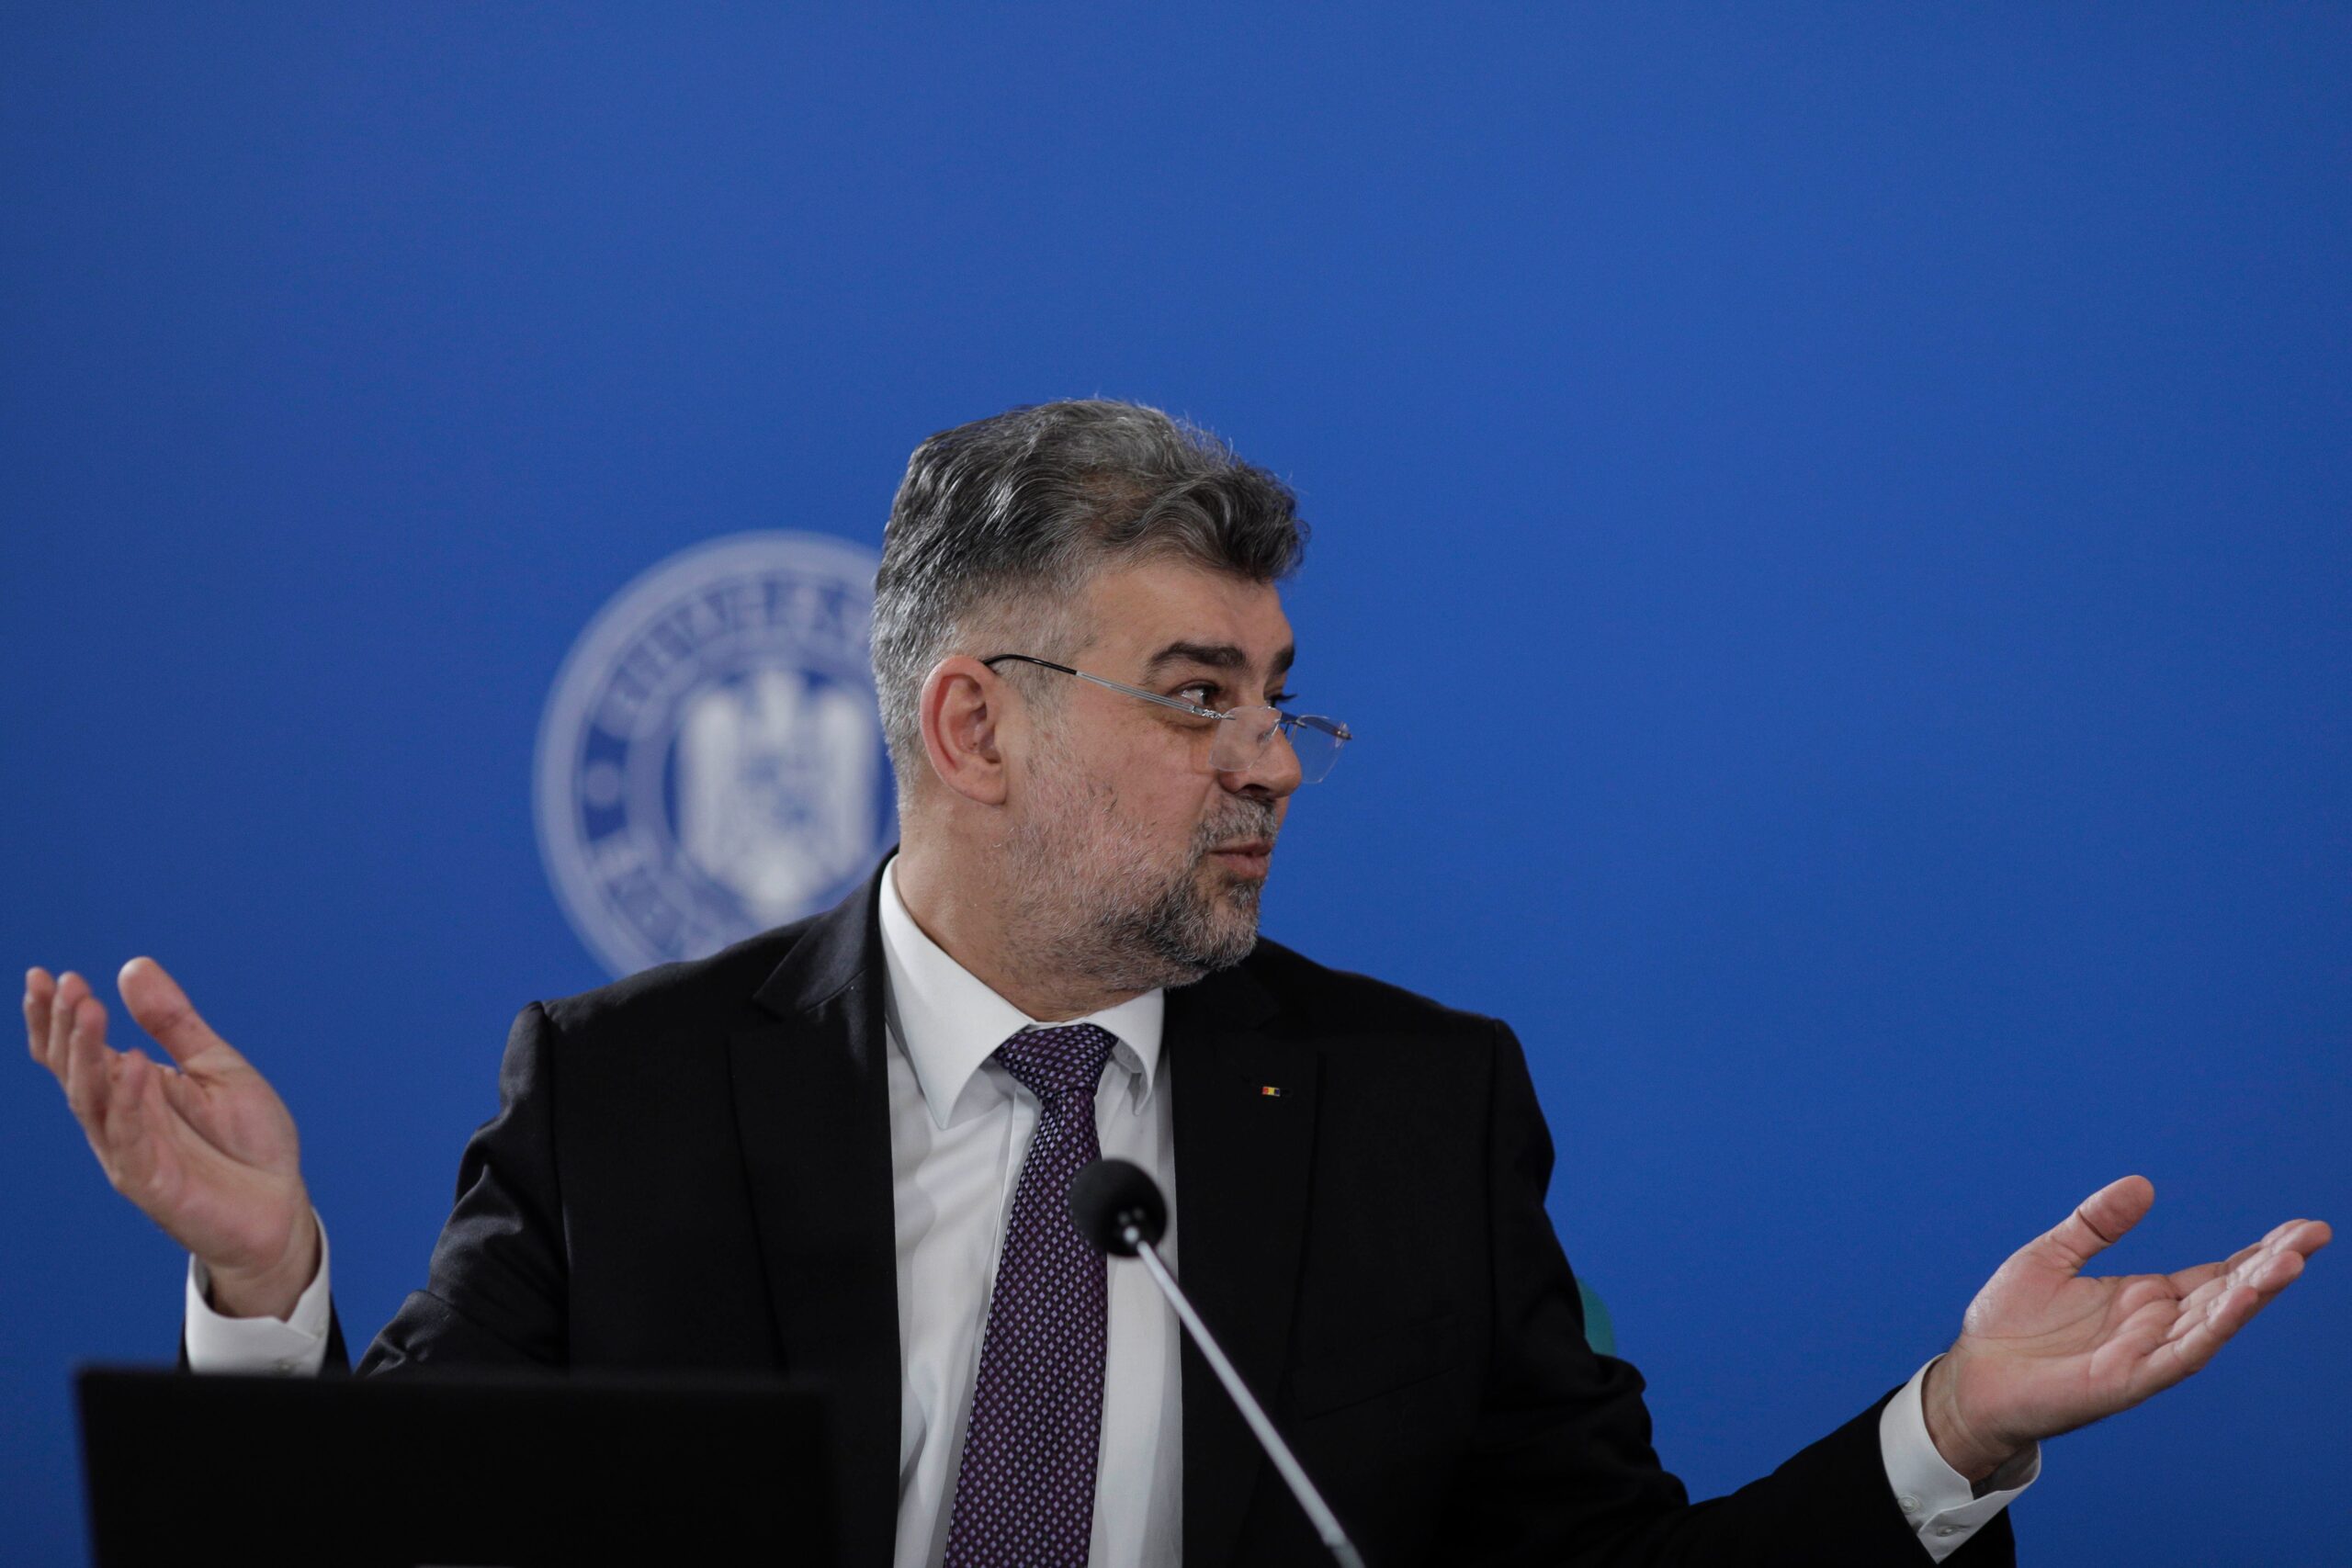  Ciolacu intervine în disputa din Coaliție: Actul de guvernare este mai important decât păruiala politică